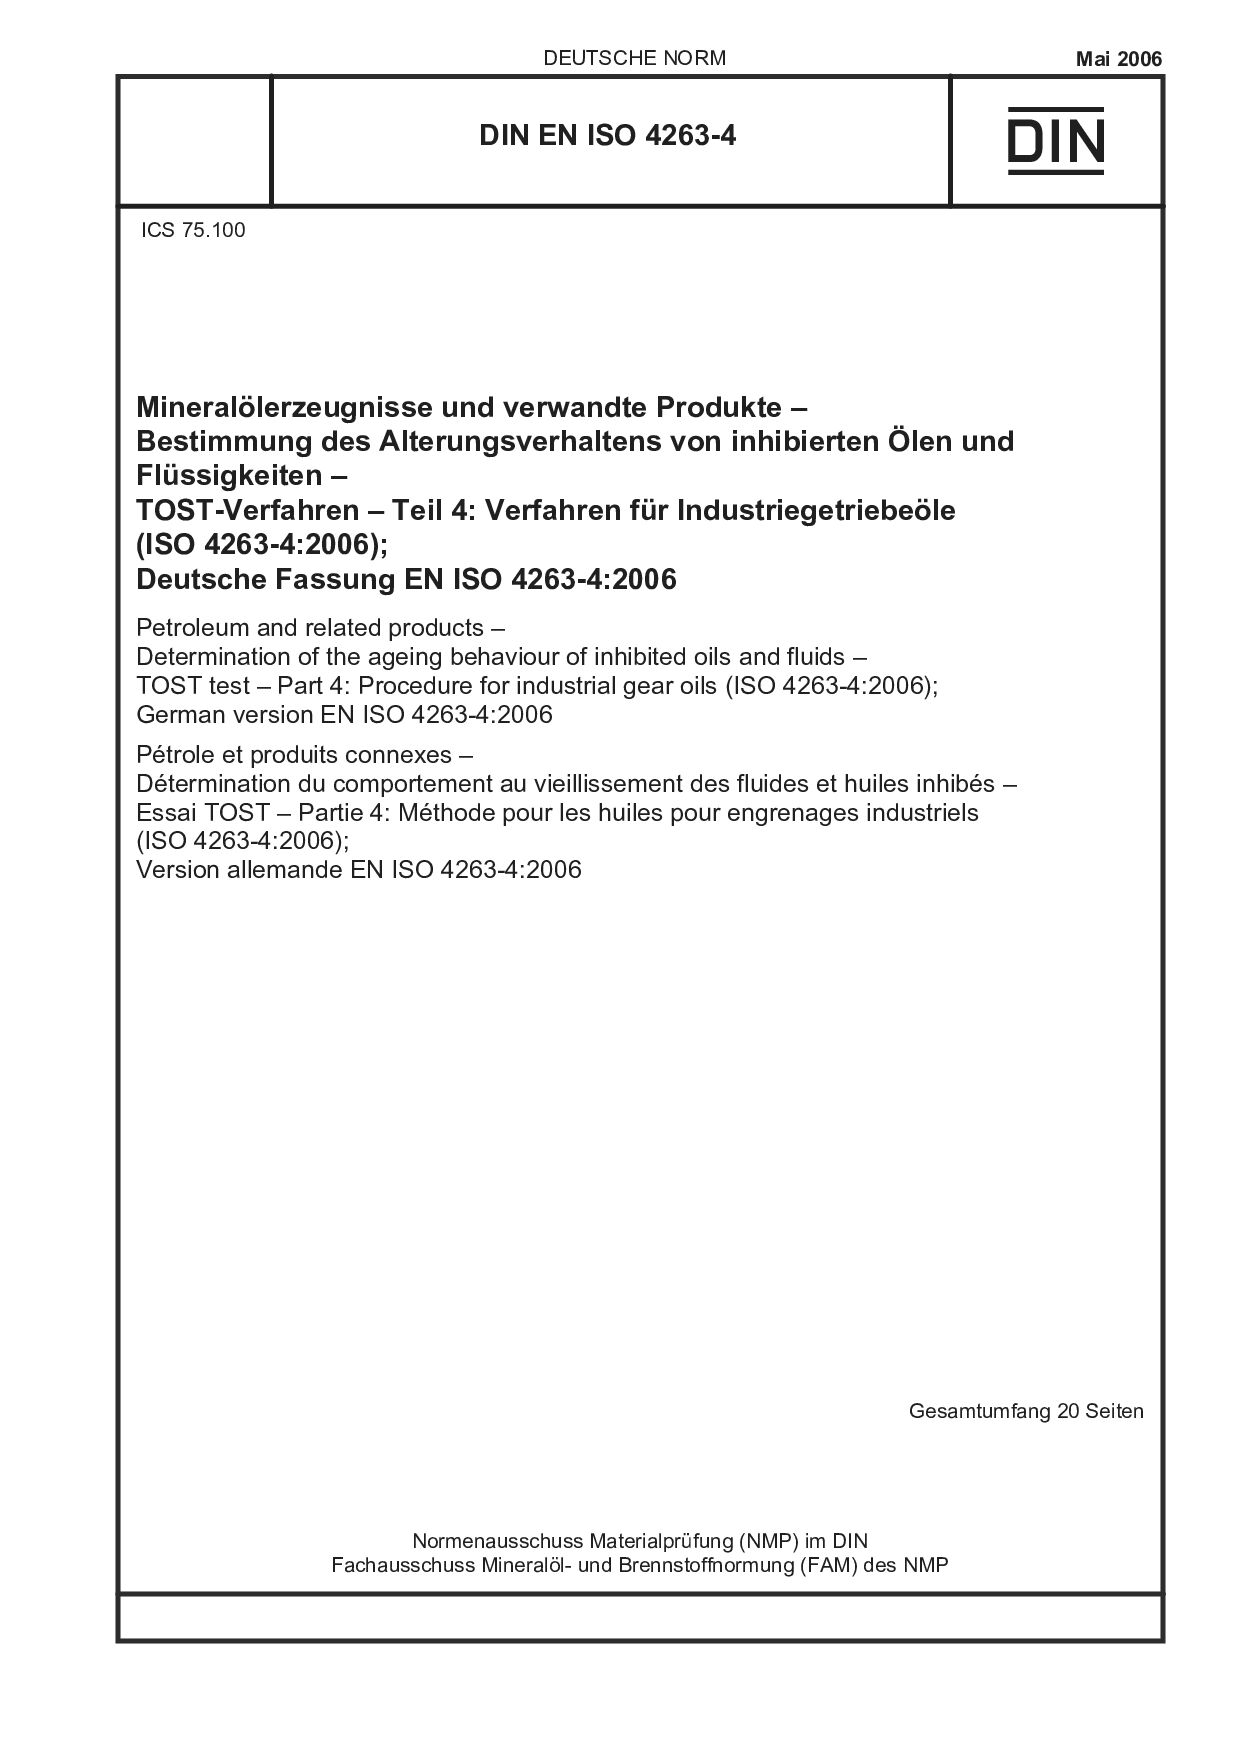 DIN EN ISO 4263-4:2006封面图